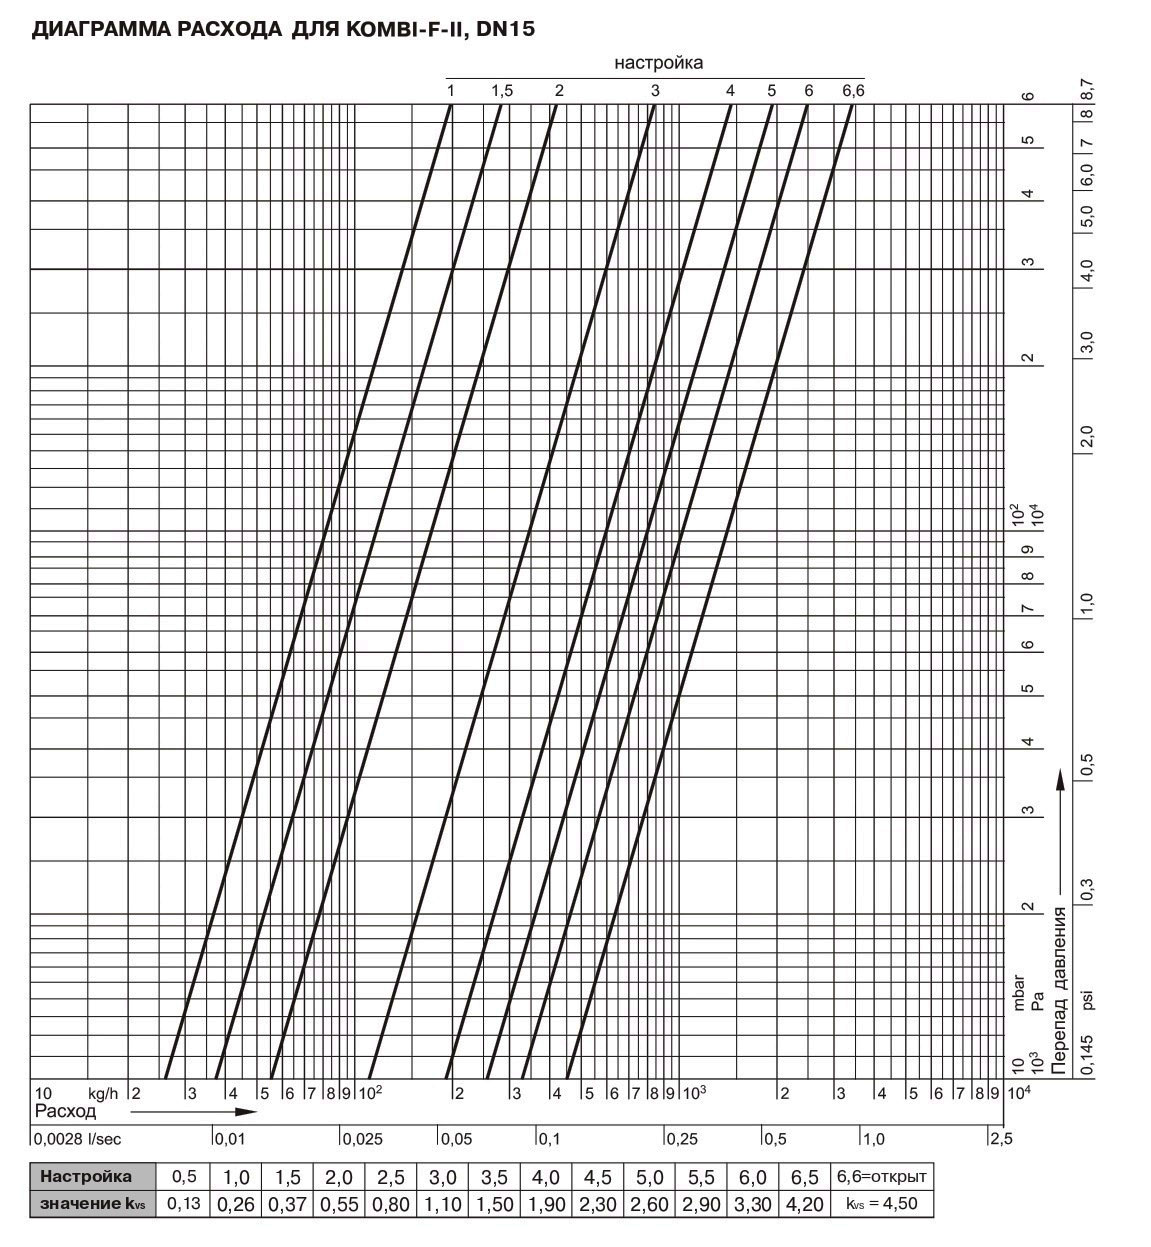 Діаграма витрати Honeywell V 6000 Kombi-F-II ДК 15